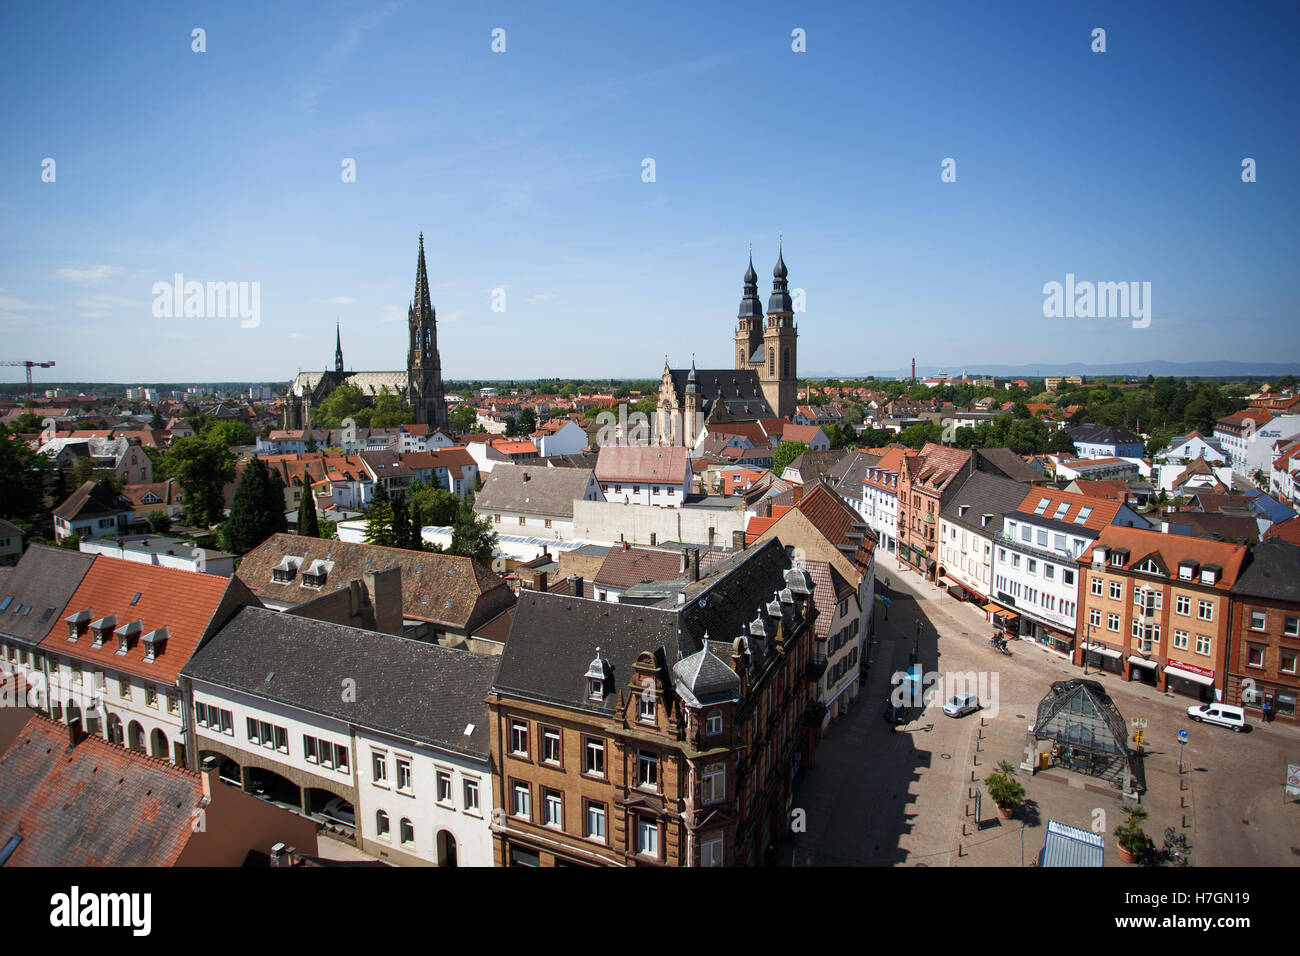 Vue de la ville de Speyer en Rheinland-pfalz Allemagne Europe au début de l'été sur une journée ensoleillée Banque D'Images